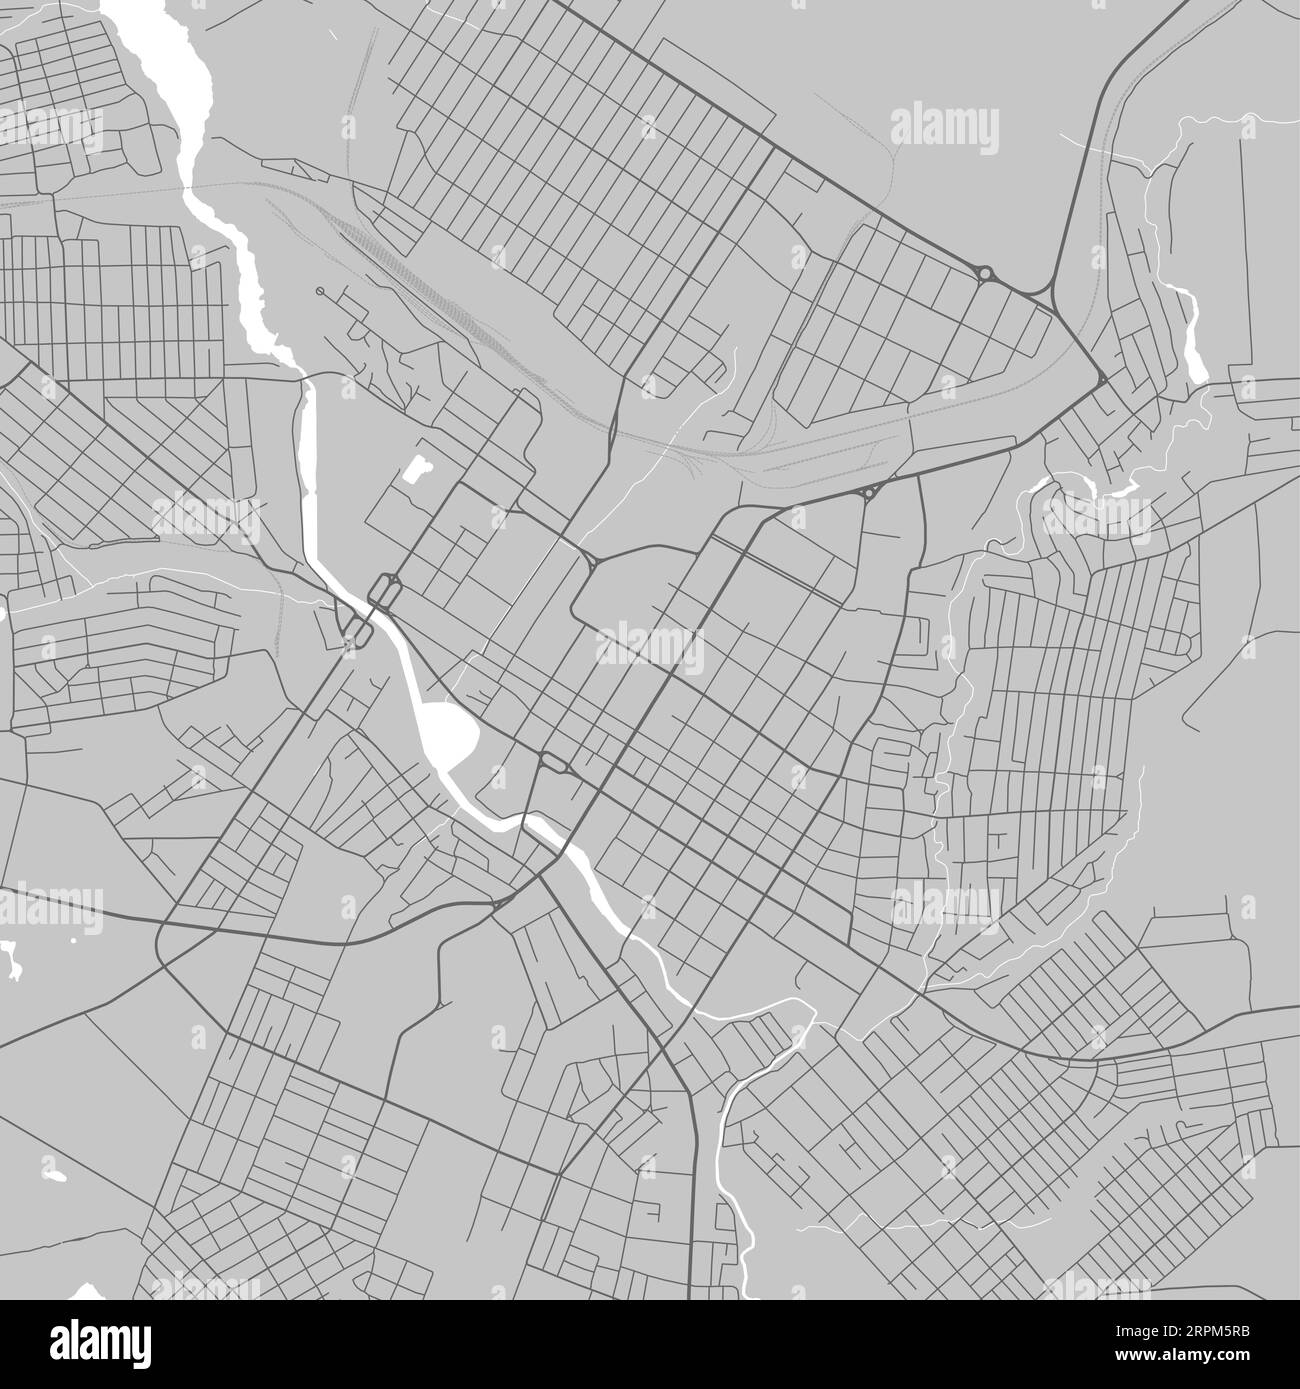 Carte de Kropyvnytskyi ville, Ukraine. Affiche urbaine en noir et blanc. Image de la carte routière avec vue de la zone urbaine. Illustration de Vecteur